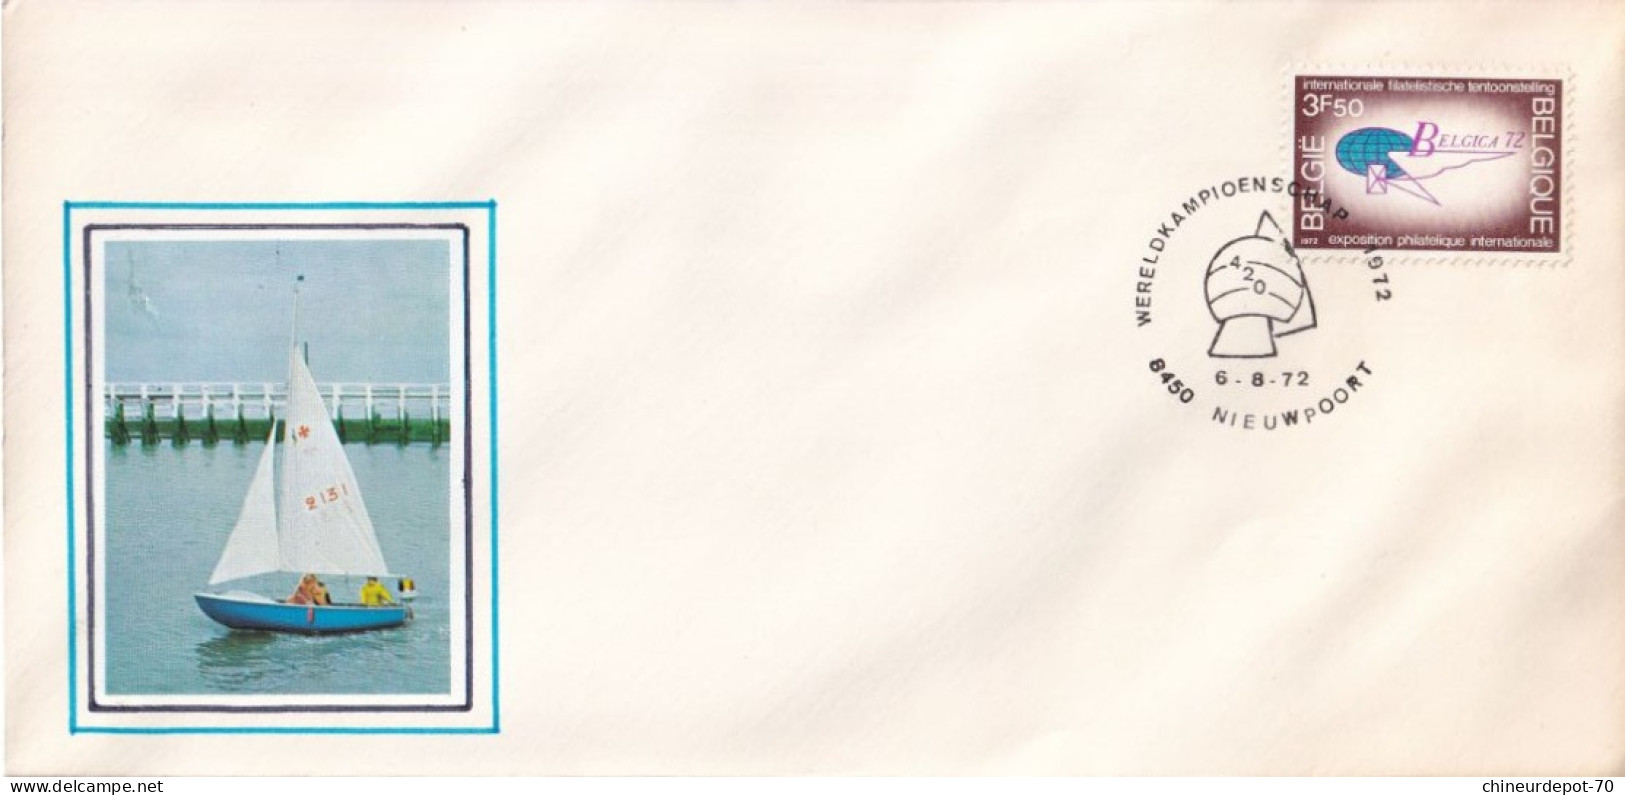 Enveloppe Oblitérée Expositions Philatéliques Internationales 1972 - Storia Postale